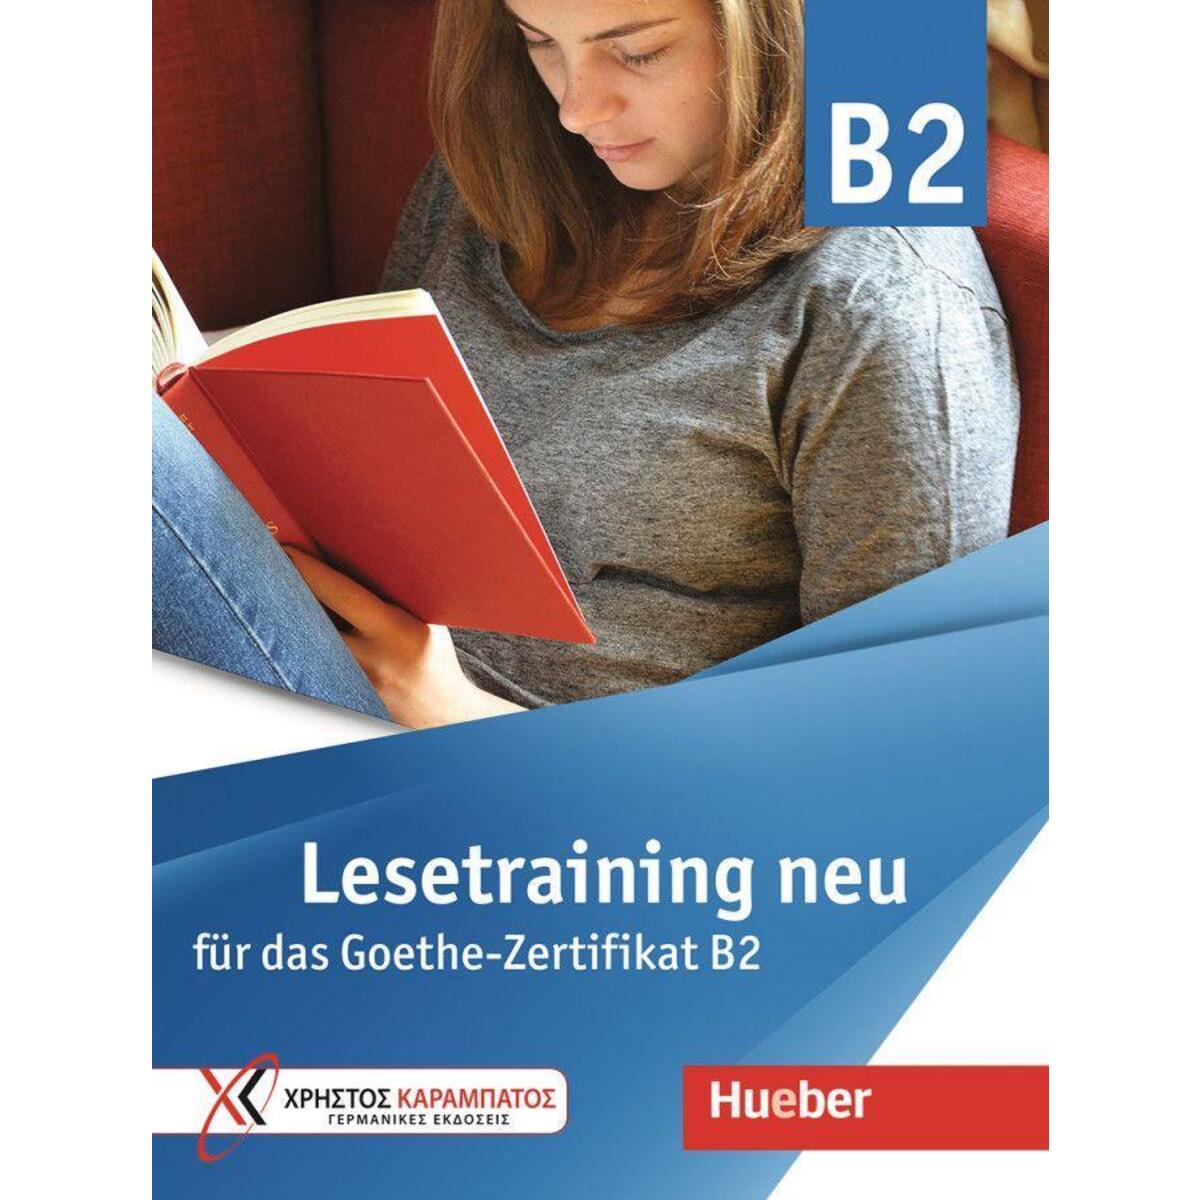 Lesetraining neu von Hueber Verlag GmbH